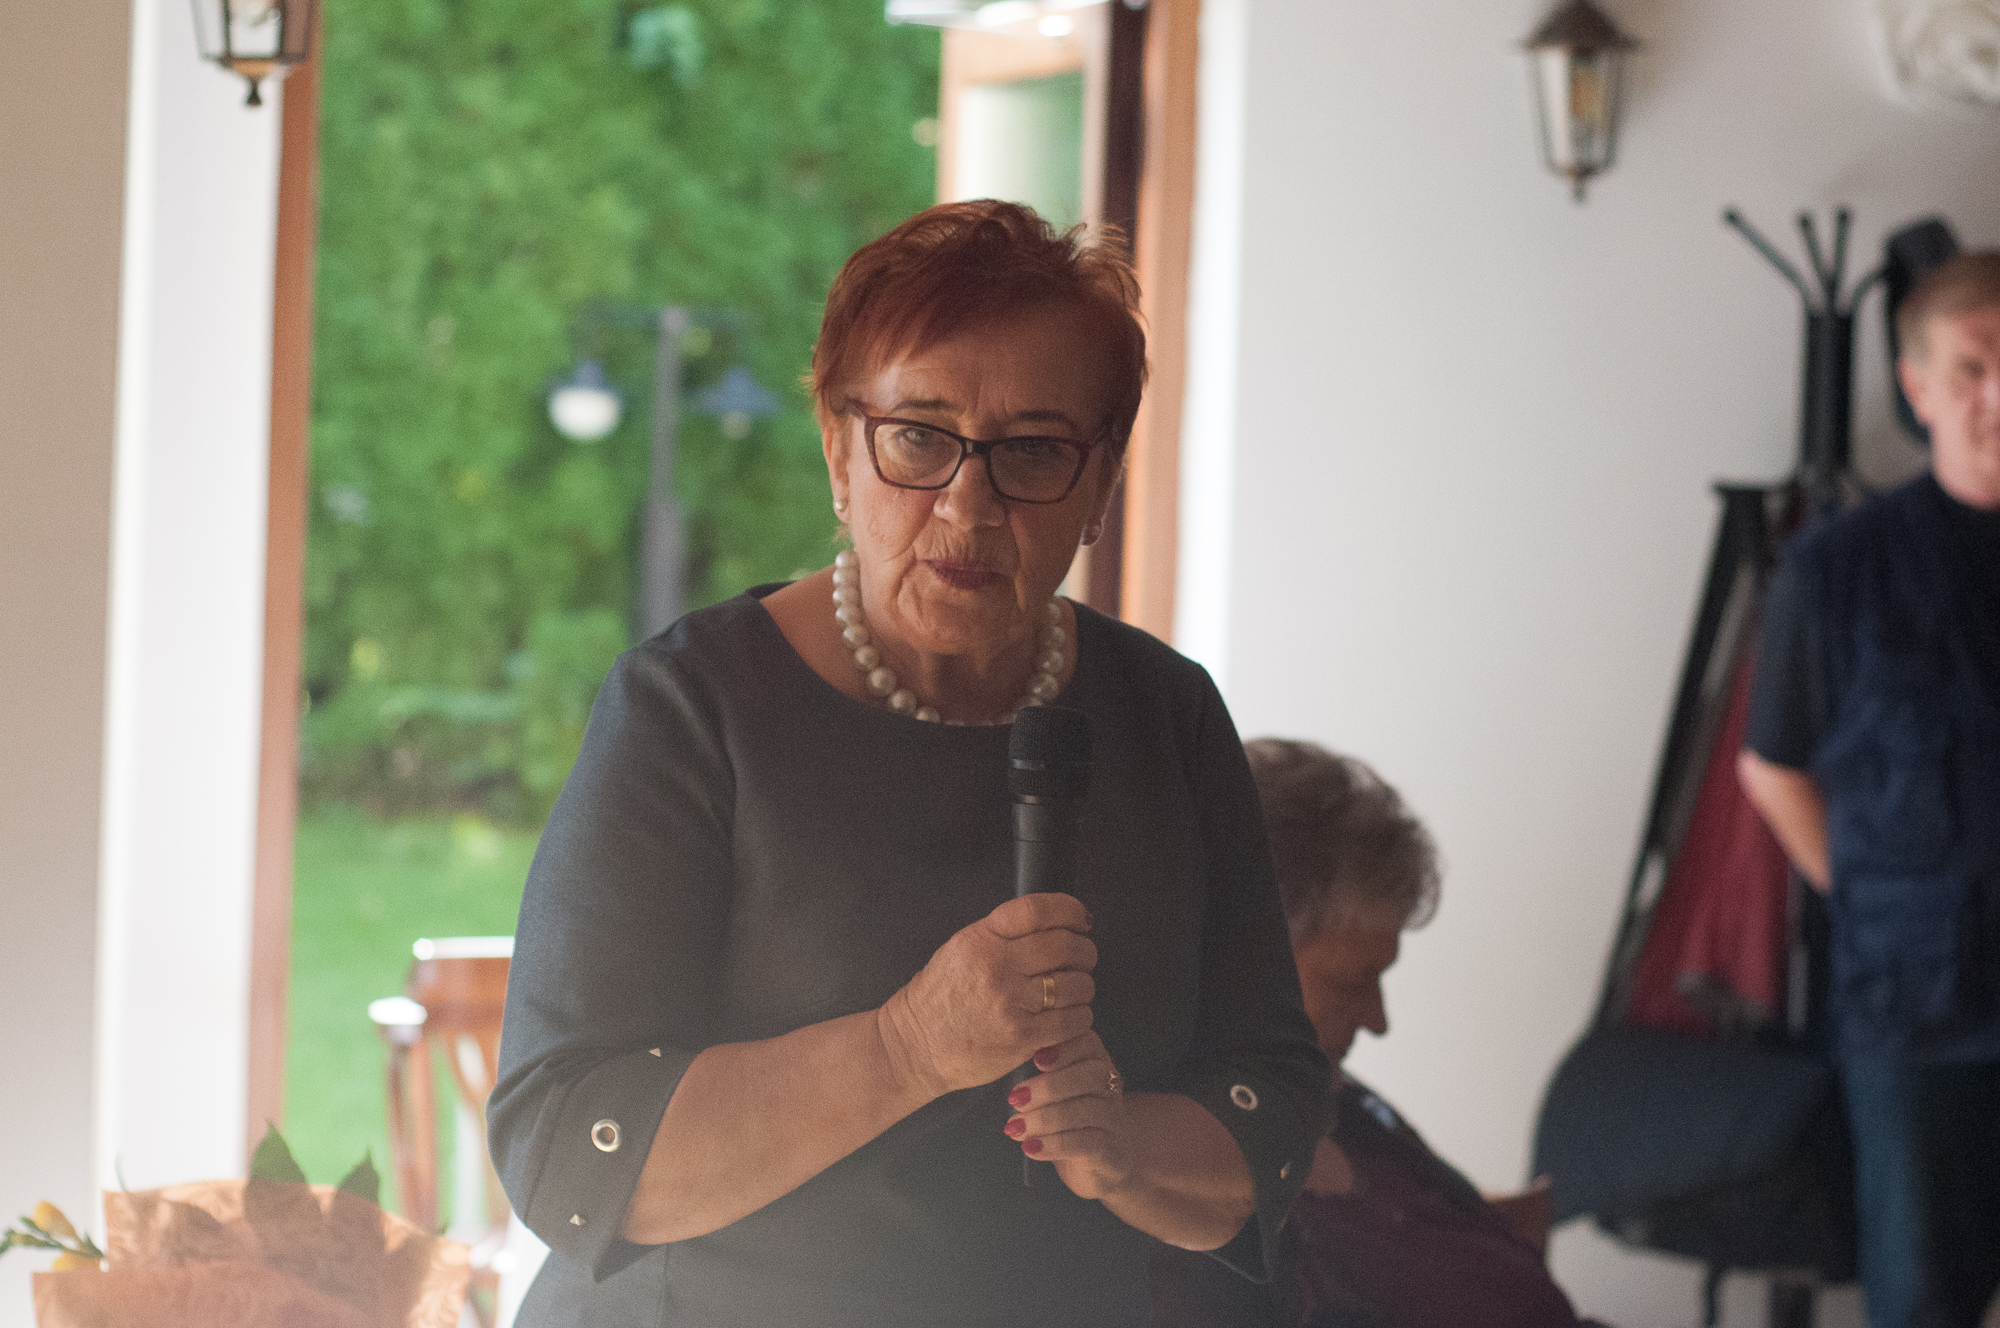 Przewodnicząca Zarządu Rejonowego Polskiego Związku Emerytów Rencistów i Inwalidów Krystyna Loch wzięła udział w Dniu Seniora zorganizowanym 30 czerwca w restauracji Malibu. Życzyła seniorom zdrowia, energii, aby każdy dzień dostarczał im powodów do radości oraz życzliwych ludzi wokół.